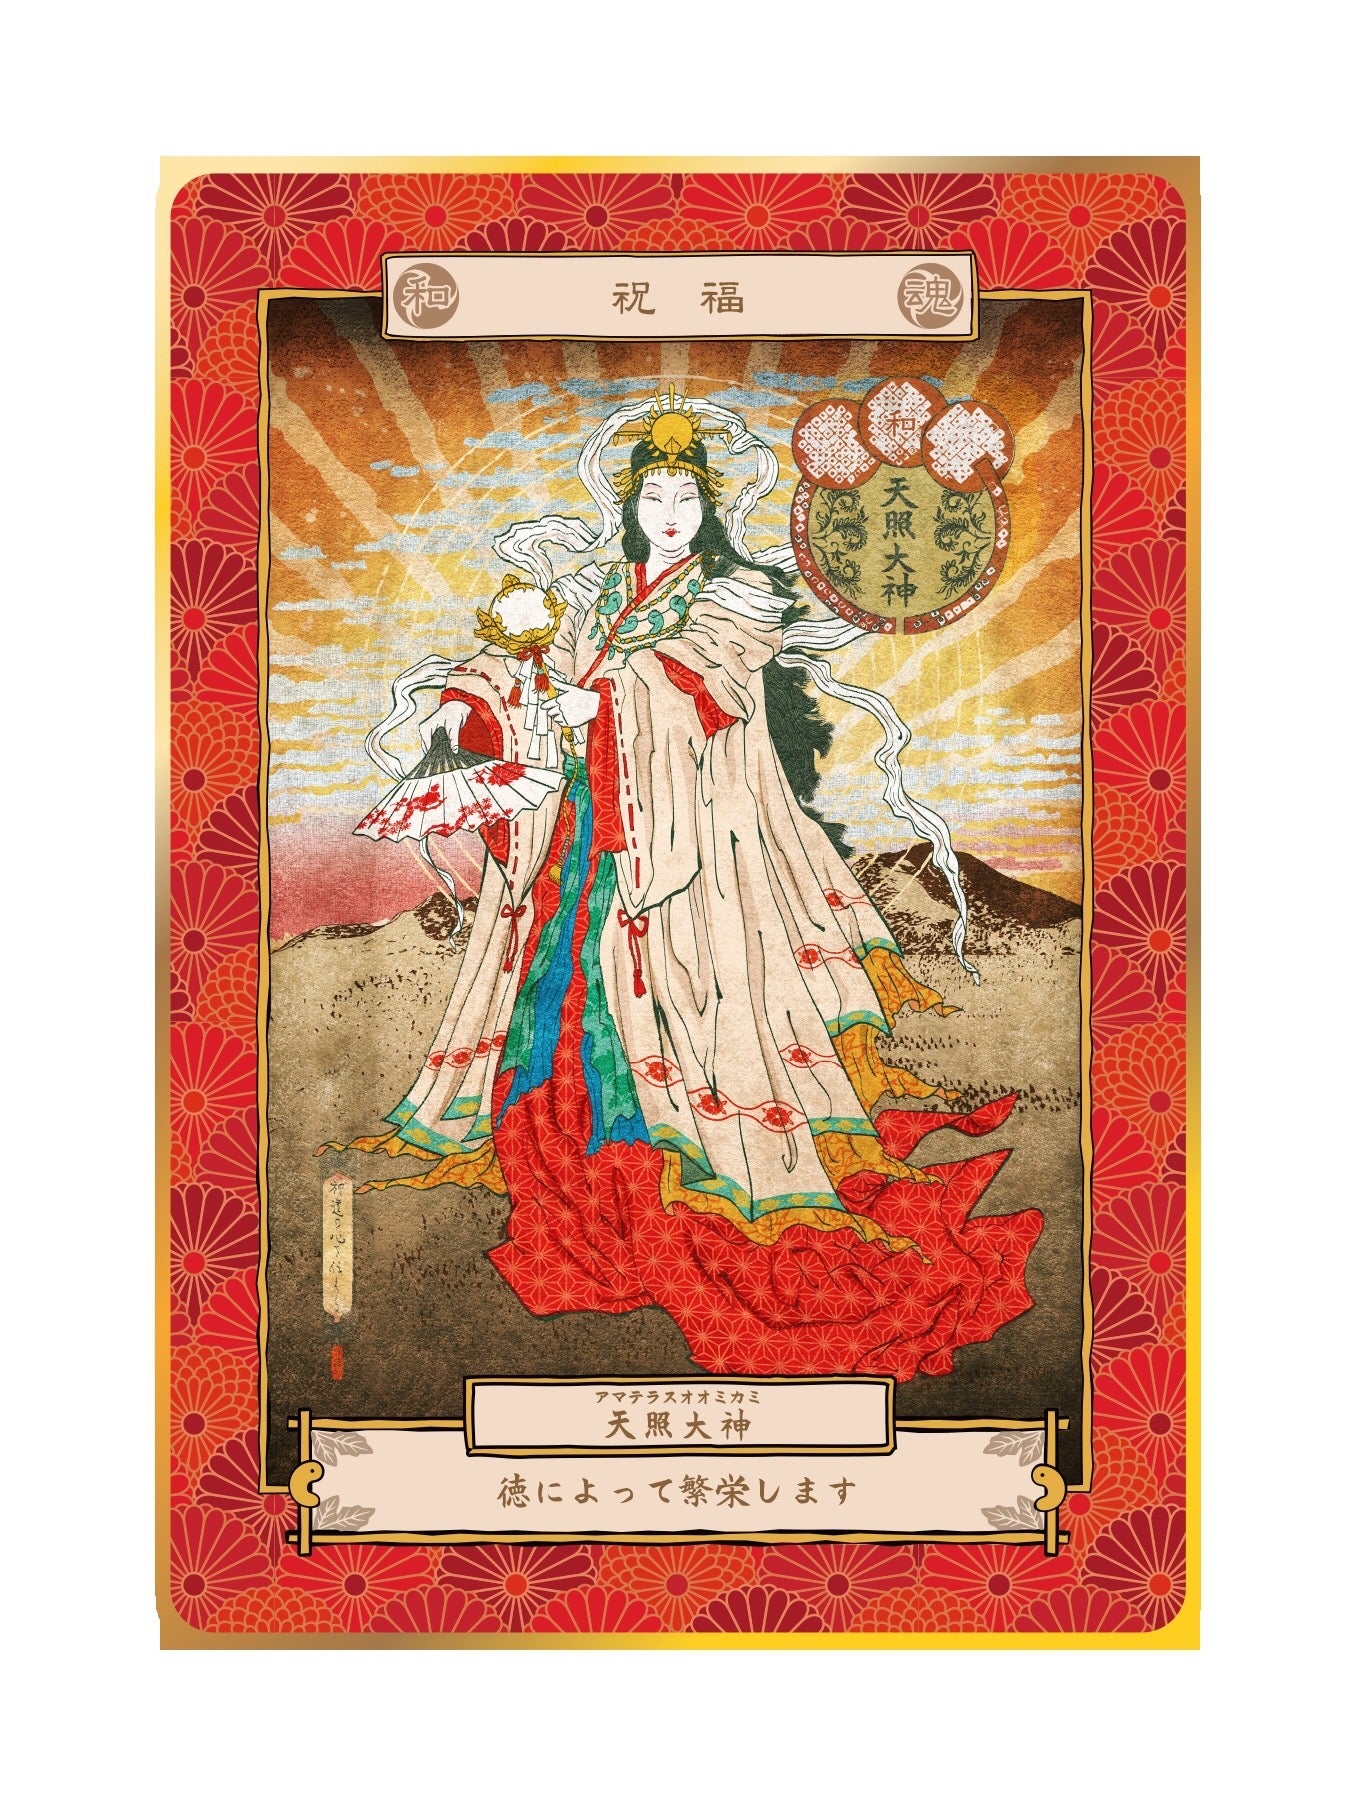 八百万の神カードの紹介 神道の心を伝える